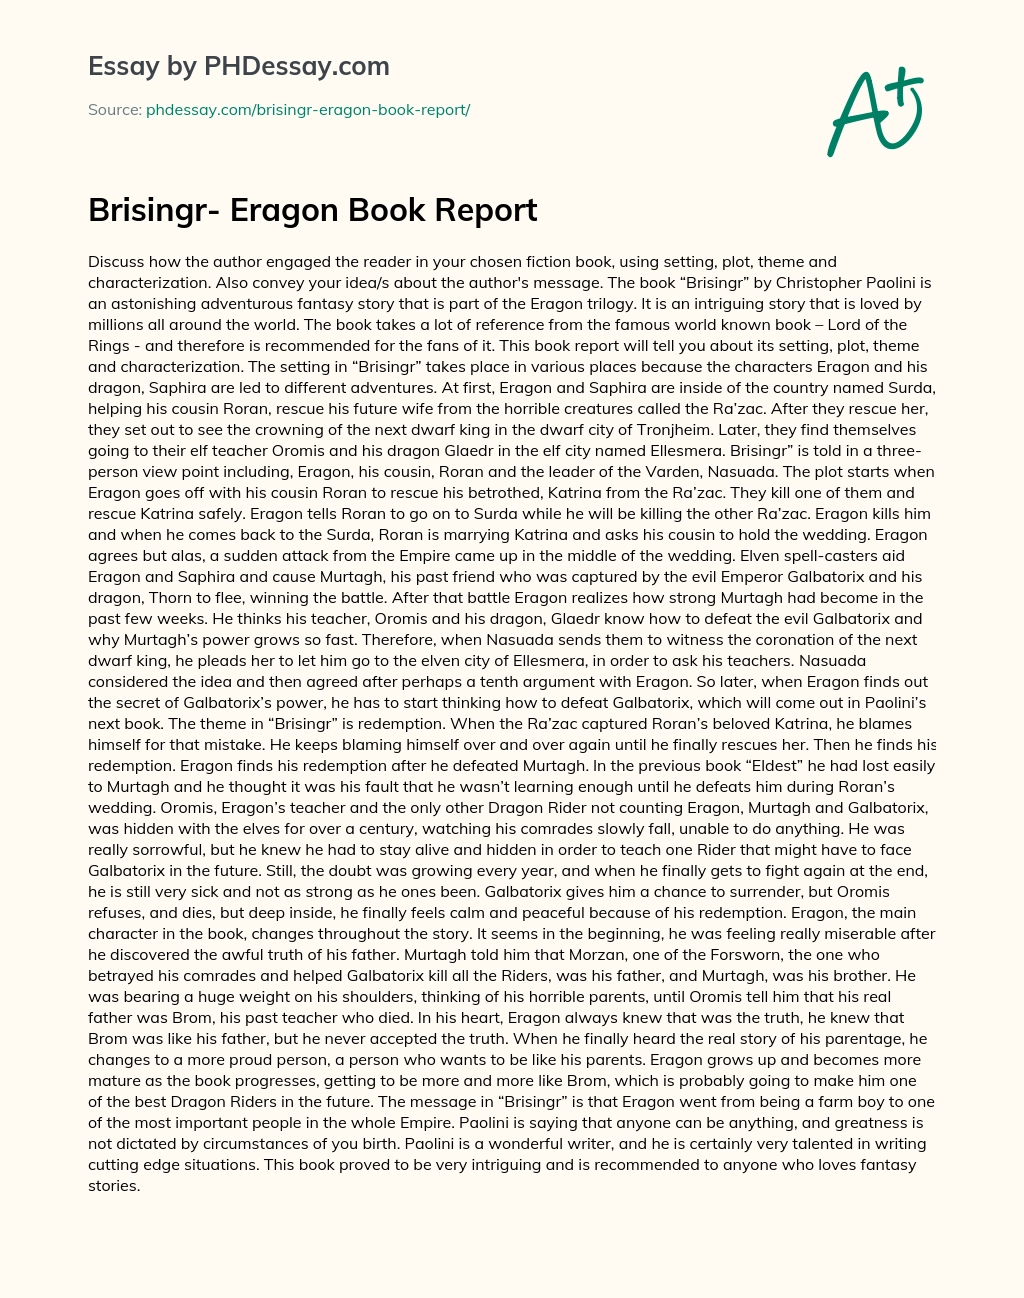 Brisingr- Eragon Book Report essay